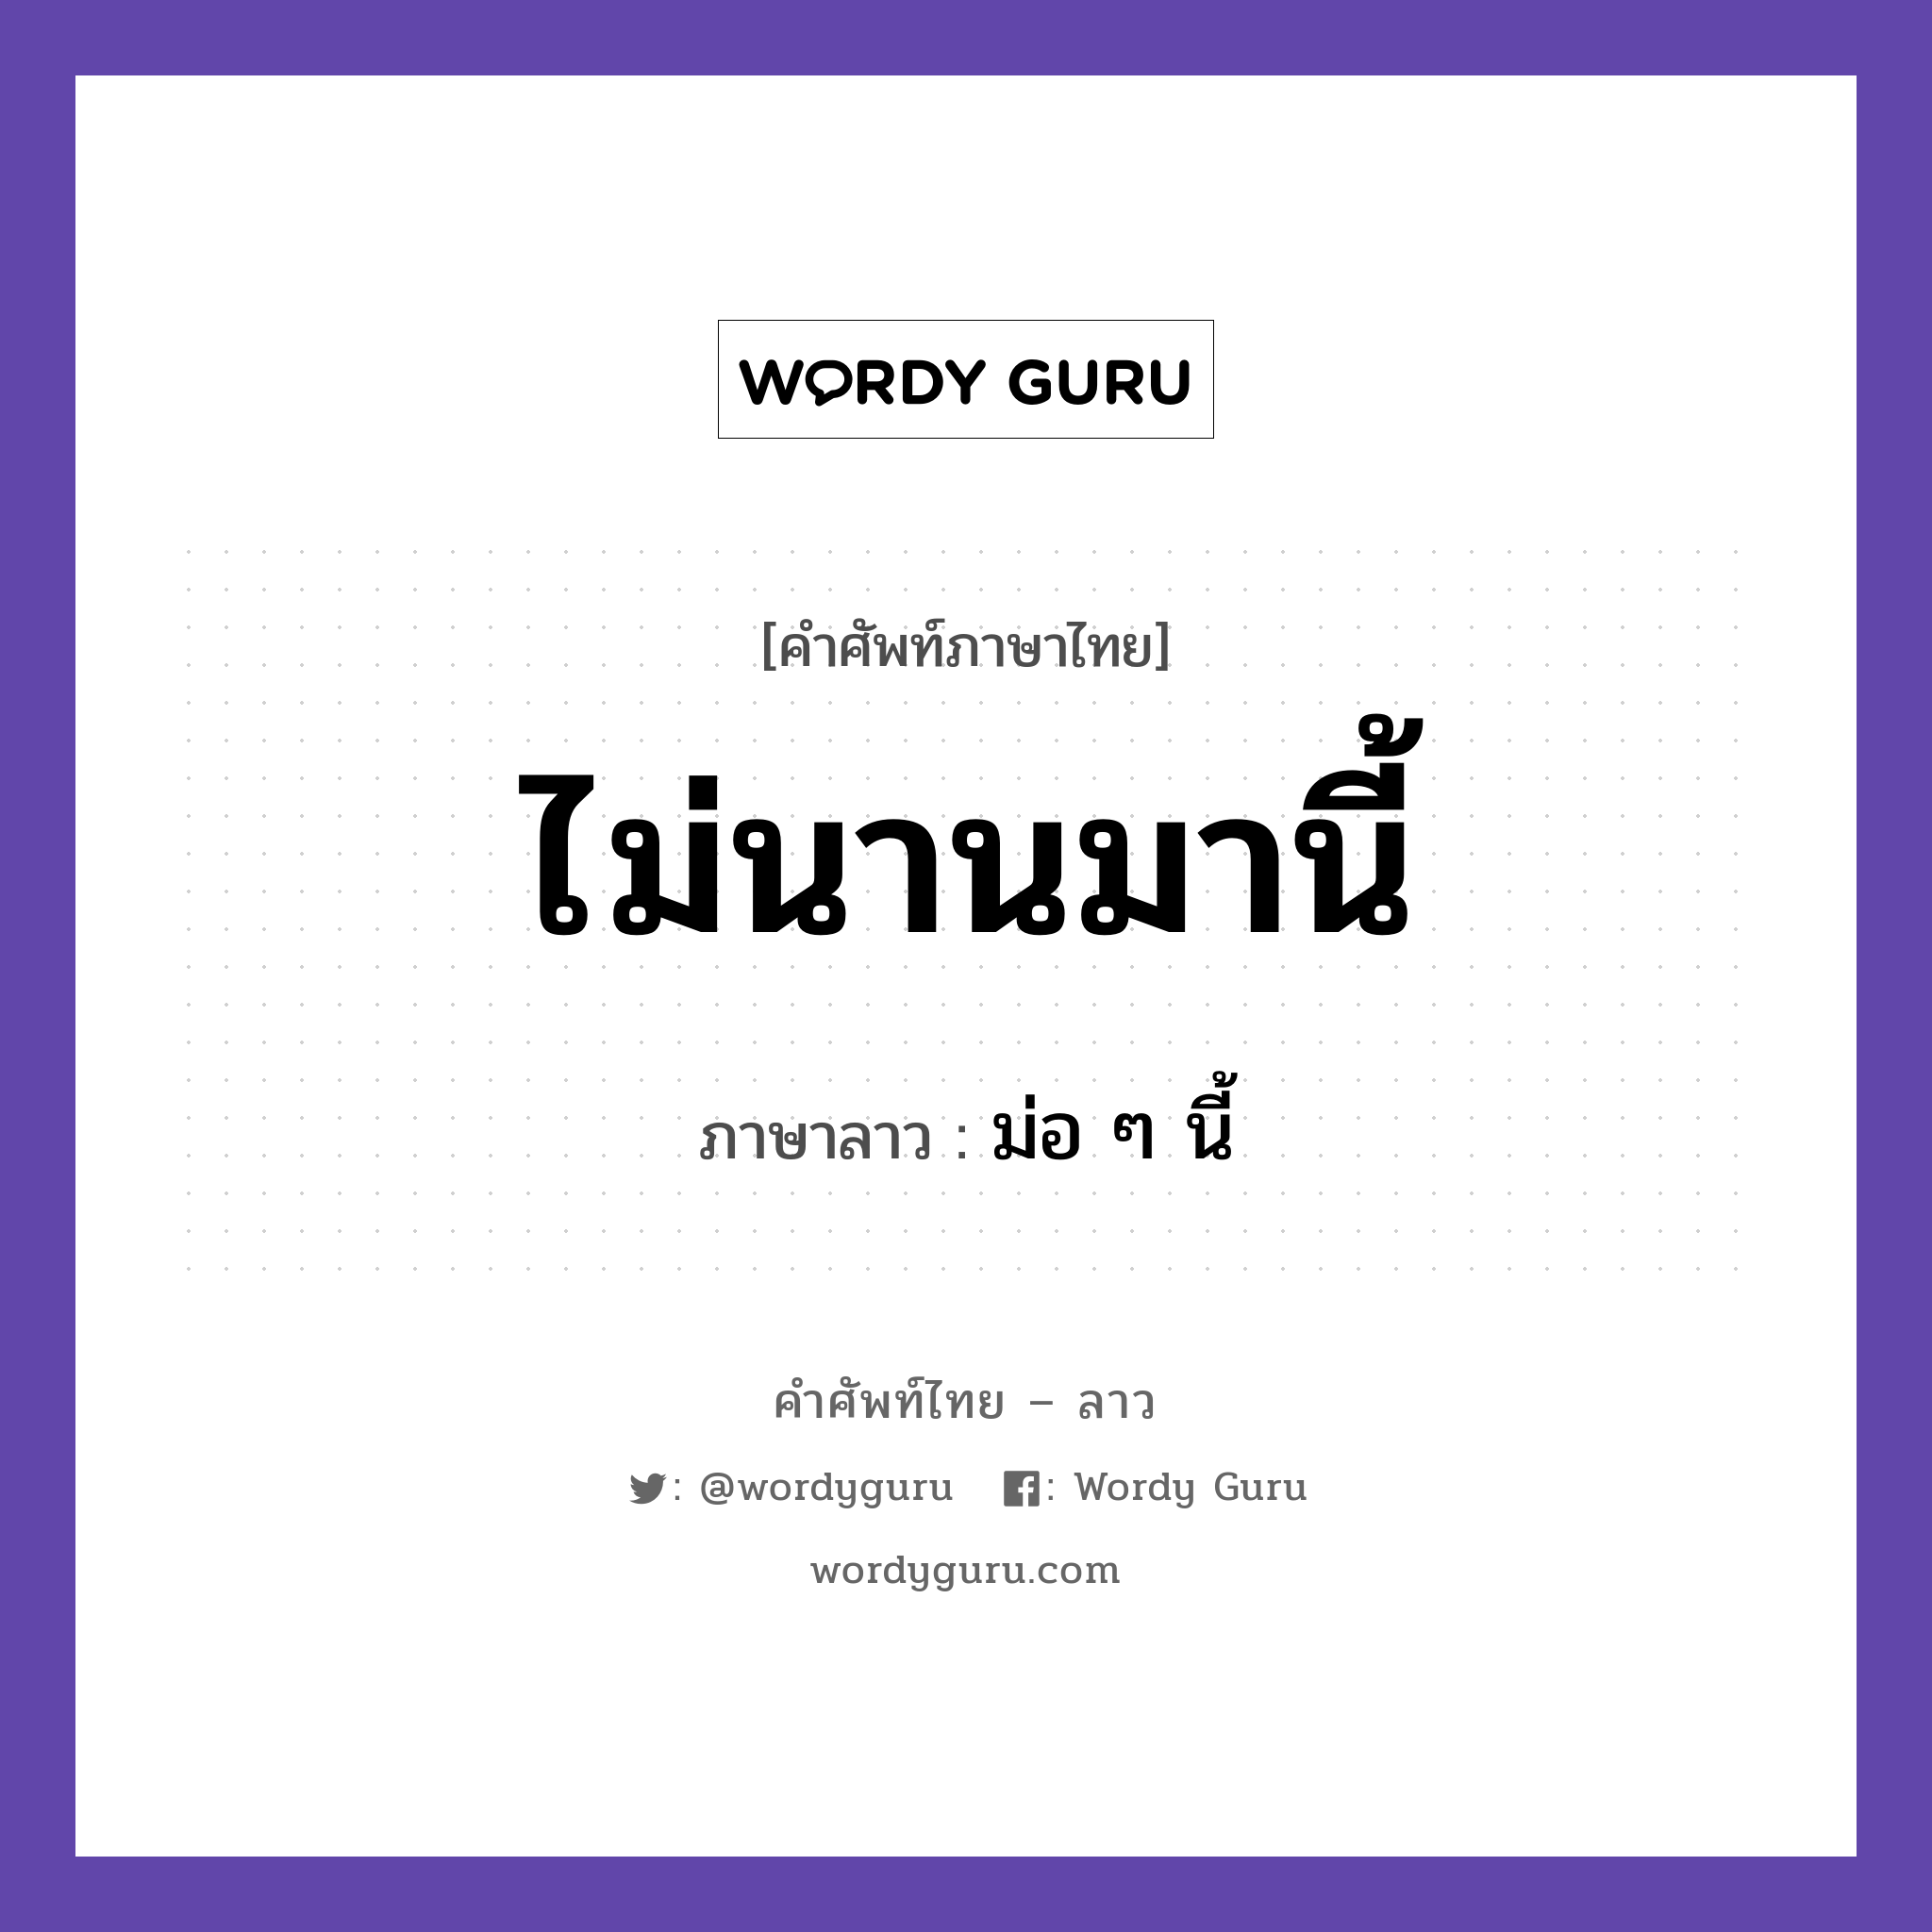 ไม่นานมานี้ ภาษาลาวคืออะไร, คำศัพท์ภาษาไทย - ลาว ไม่นานมานี้ ภาษาลาว ม่อ ๆ นี้ หมวด วันเวลา หมวด วันเวลา